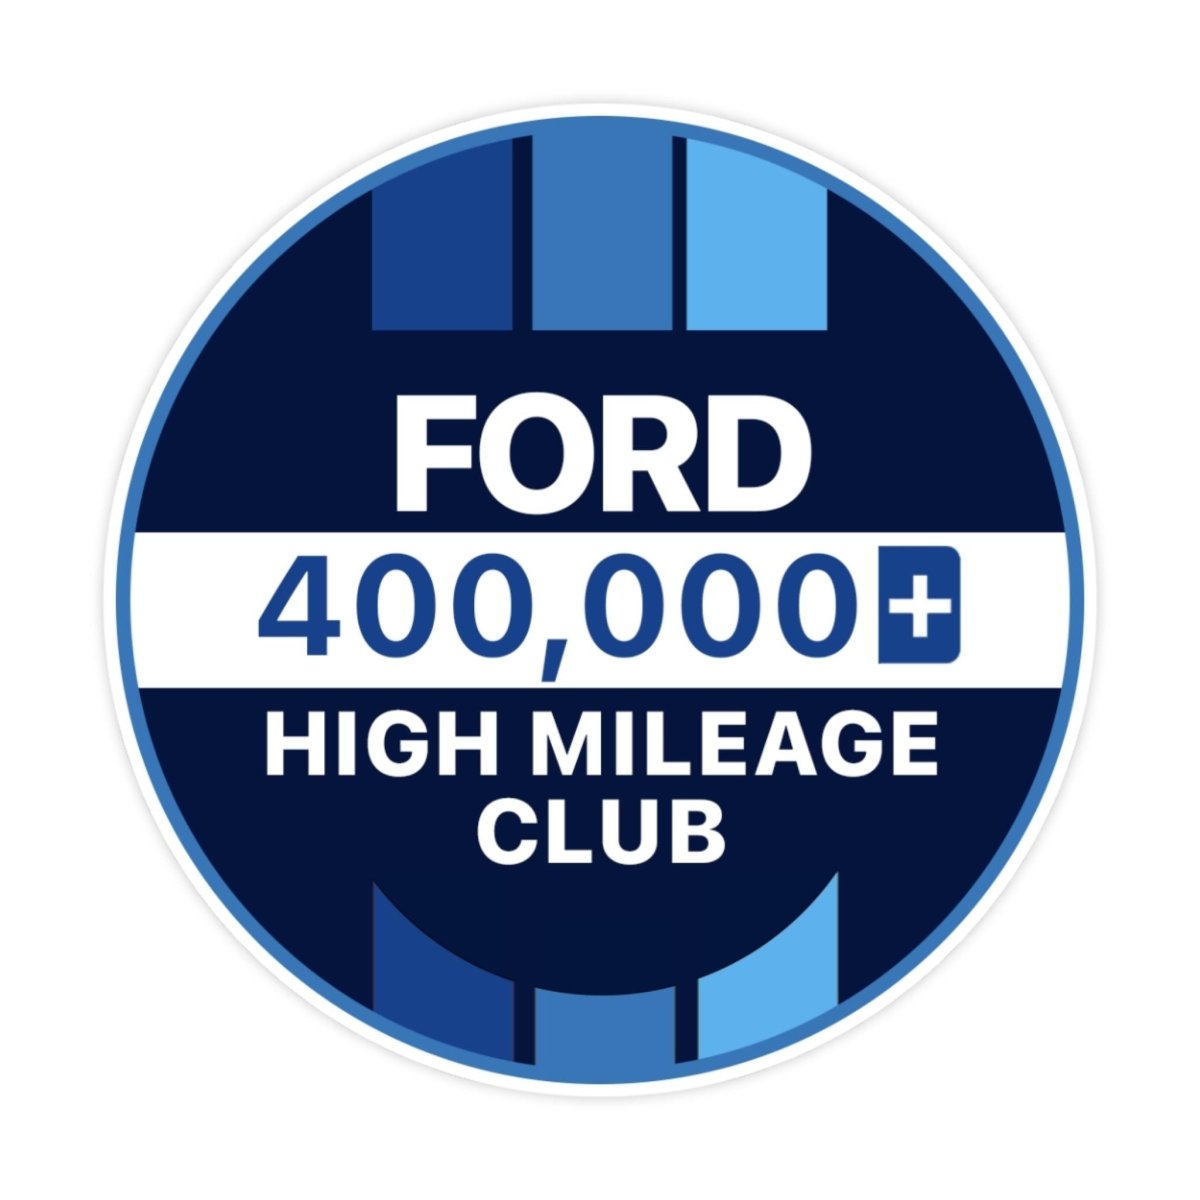 Ford 400k High Mileage Club Sticker - stickerbullFord 400k High Mileage Club StickerRetail StickerstickerbullstickerbullTaylor_Ford400k [#121]400kFord 400k High Mileage Club Sticker